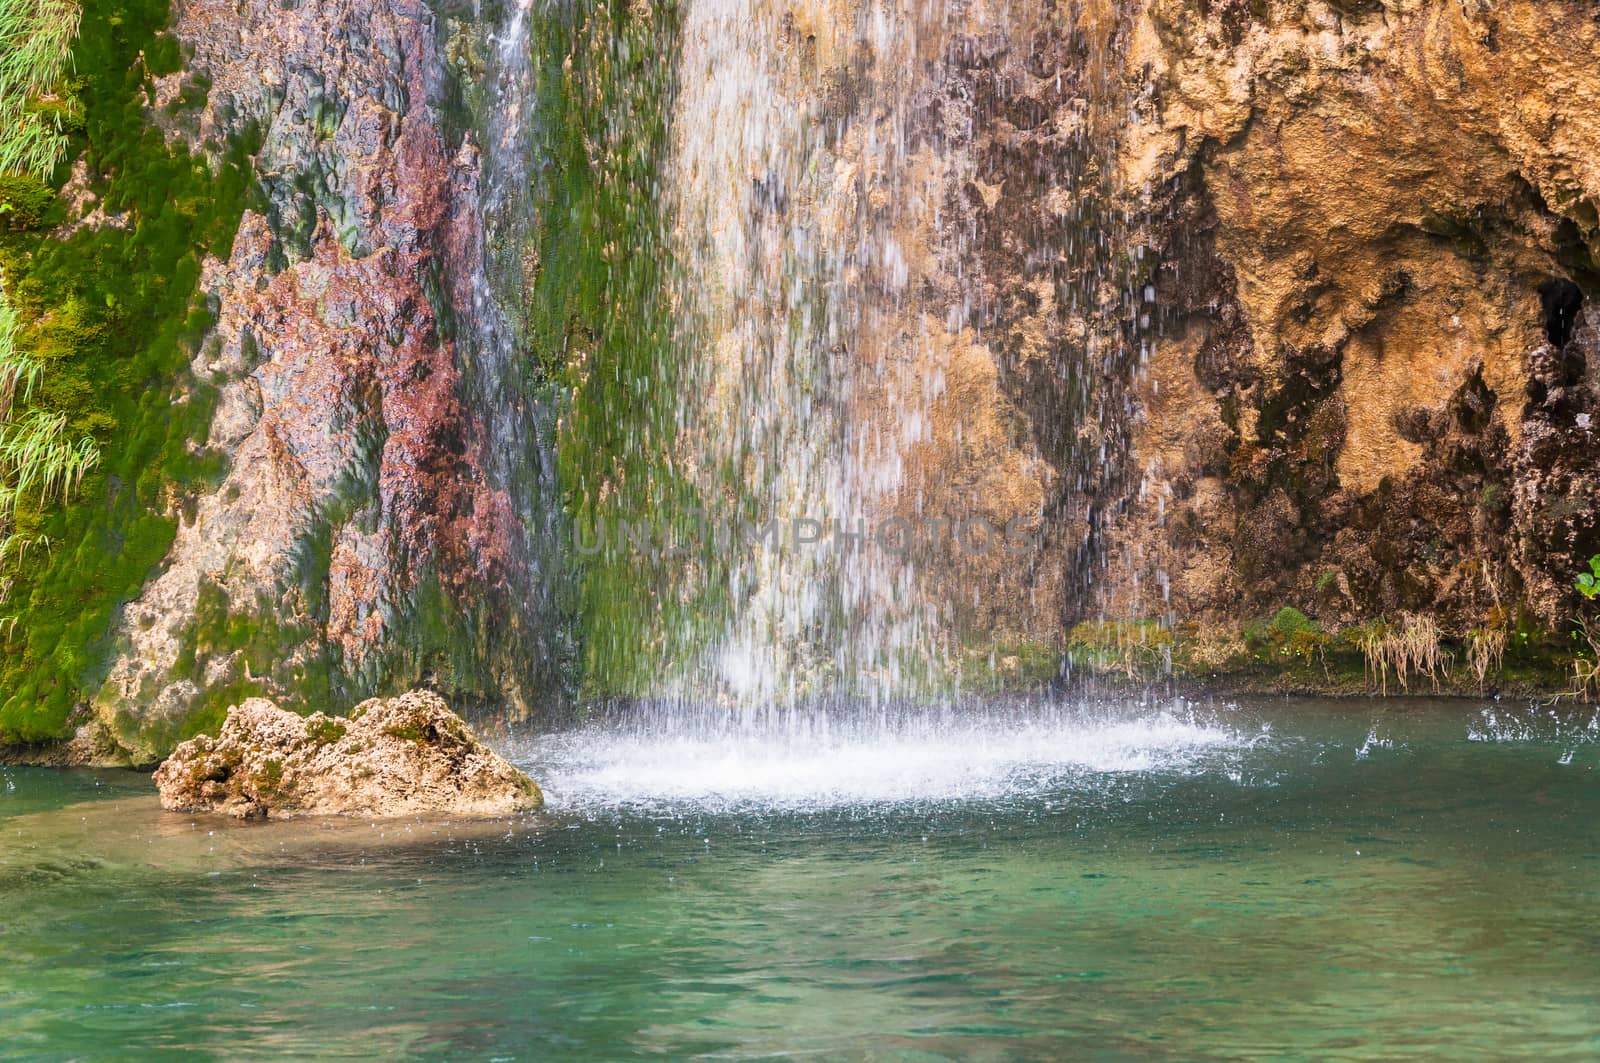 Splashing waterfall in Plitvice Lakes National Park